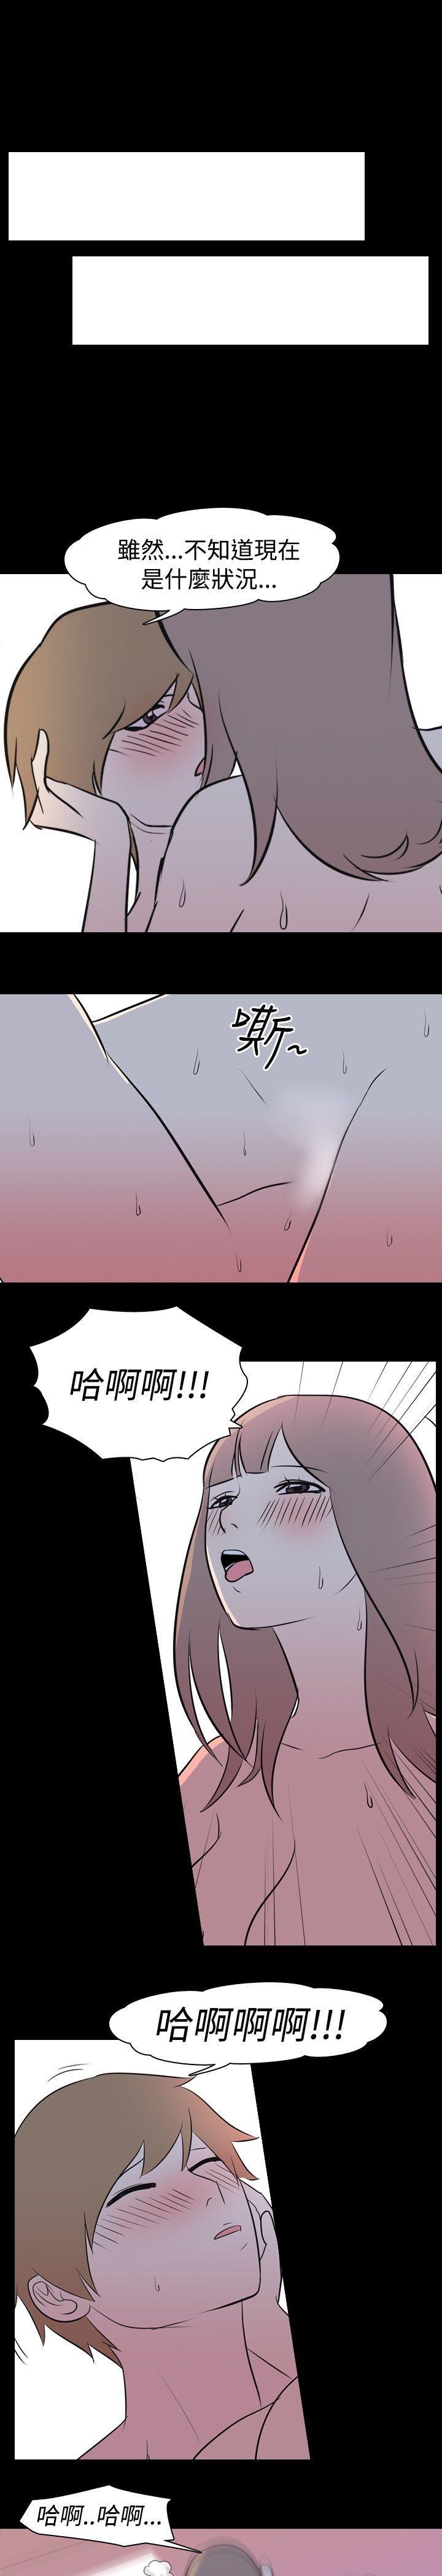 韩国污漫画 我的色色夜說 第13话-暗恋(下) 6